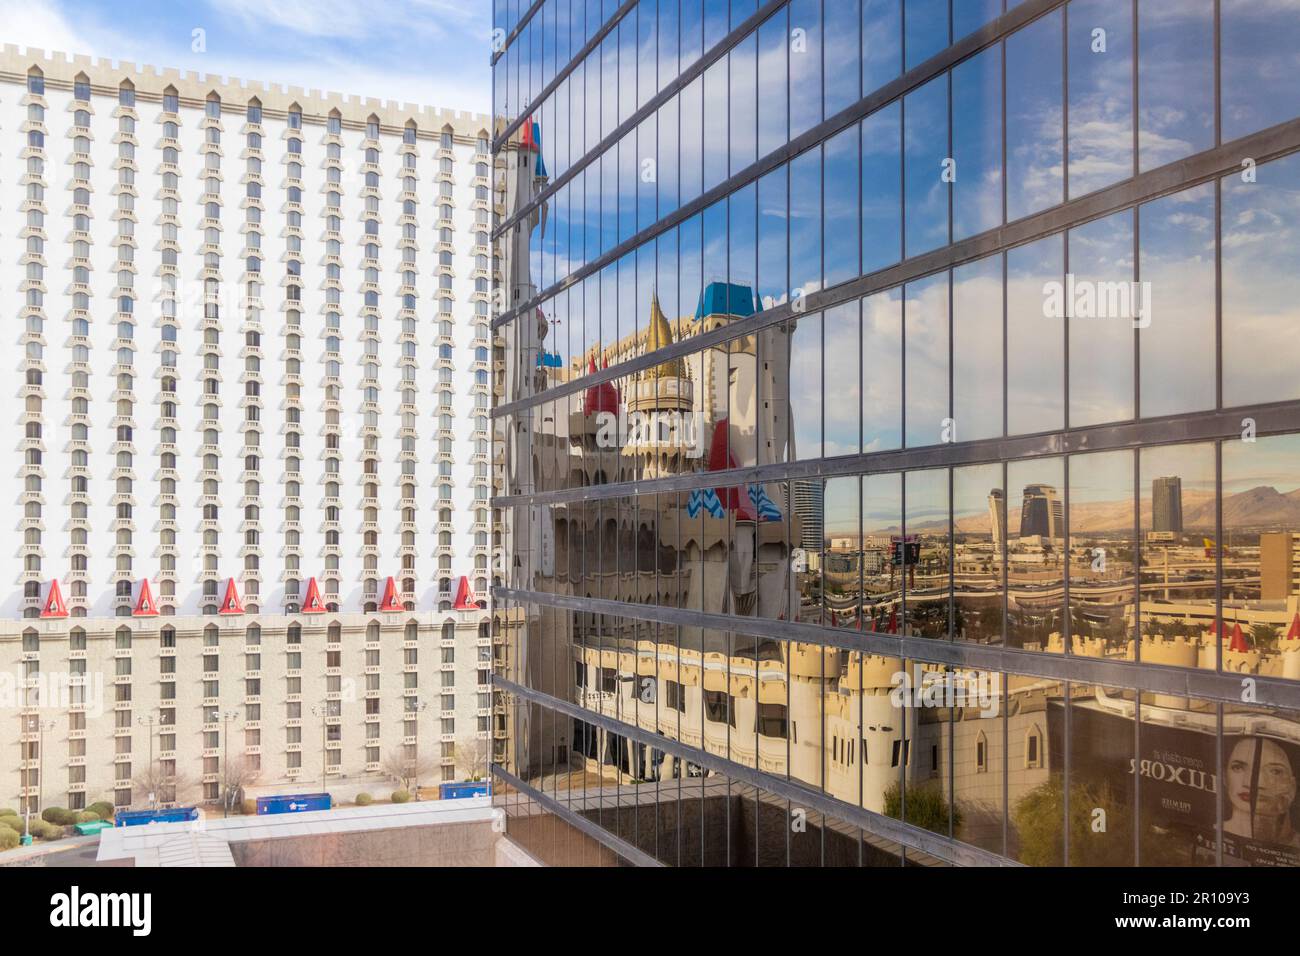 Das Excalibur Hotel, Resort und Casino in Las Vegas, Nevada. Spiegeleffekt in Windows von Luxor Hotel. Stockfoto